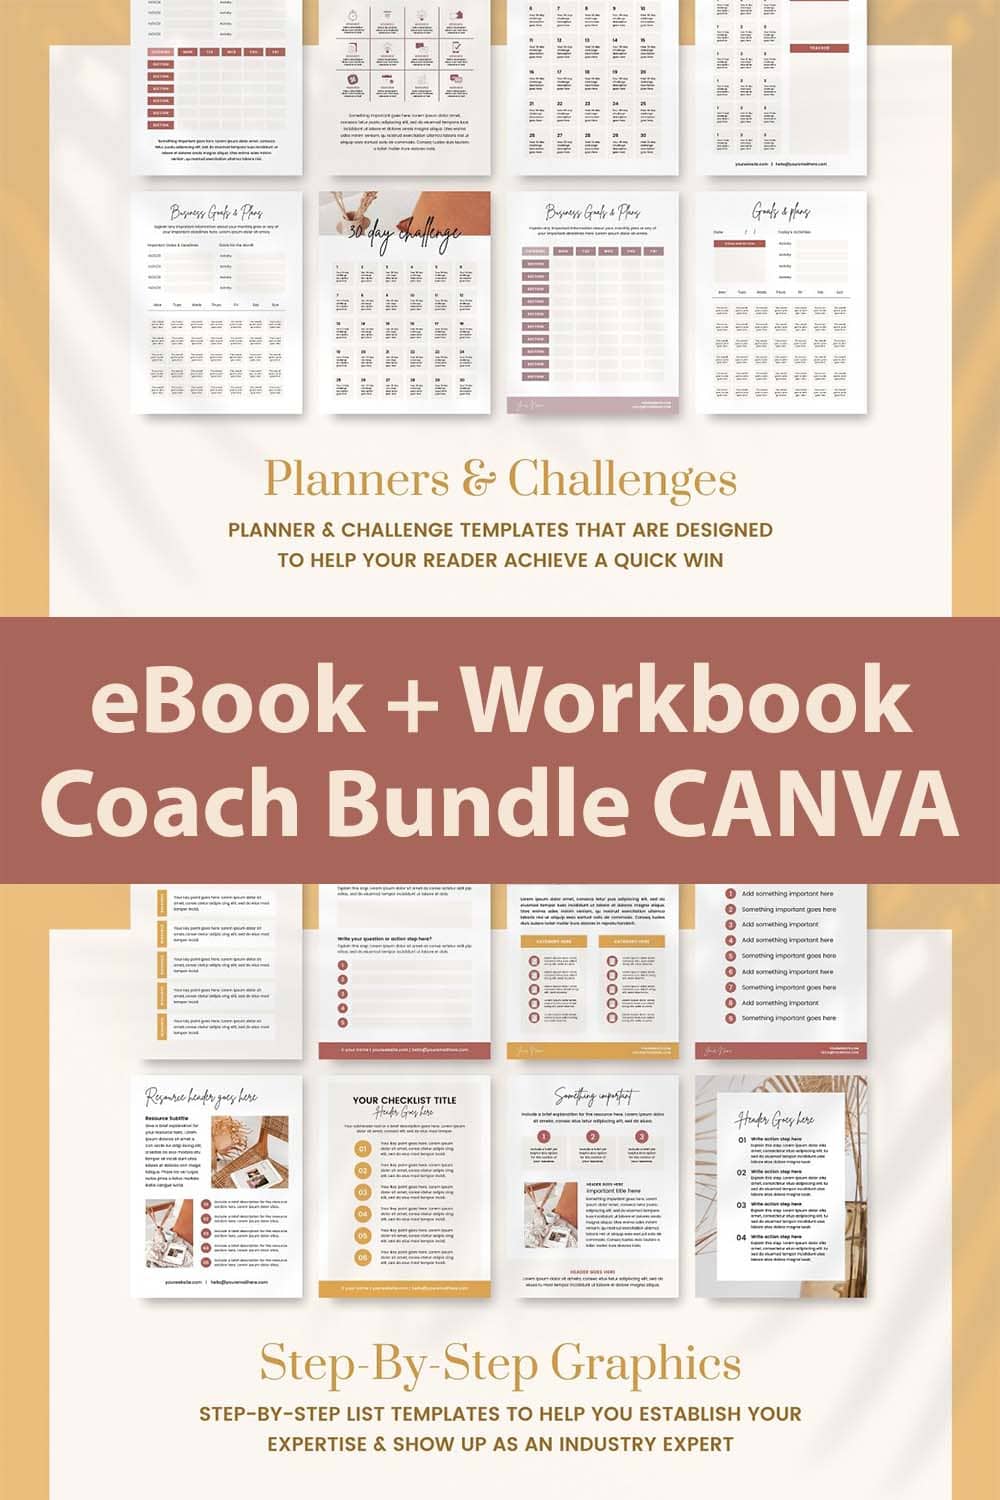 ebook workbook coach bundle canva pinterest image.